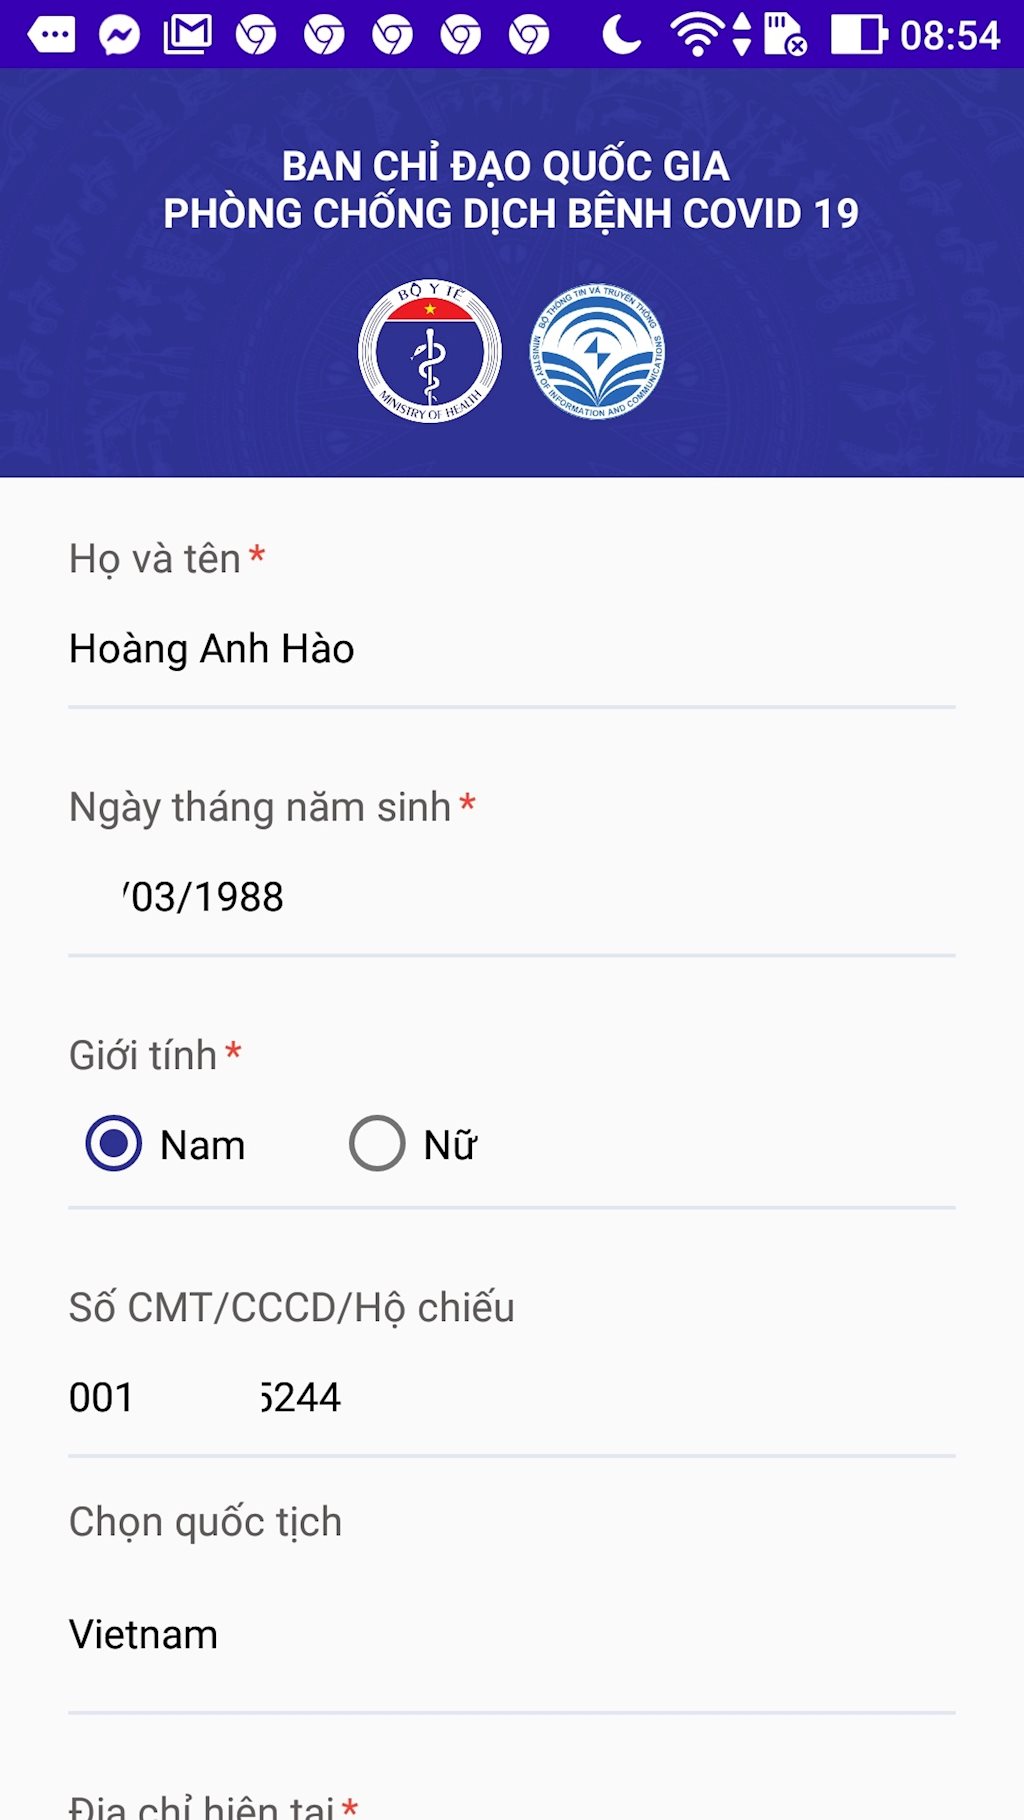 b1-huong-dan-khai-bao-y-te-toan-dan-nhu-the-nao-khai-bao-suc-khoe-toan-dan-online-dien-tu-screenshot_20200310-085419.jpg